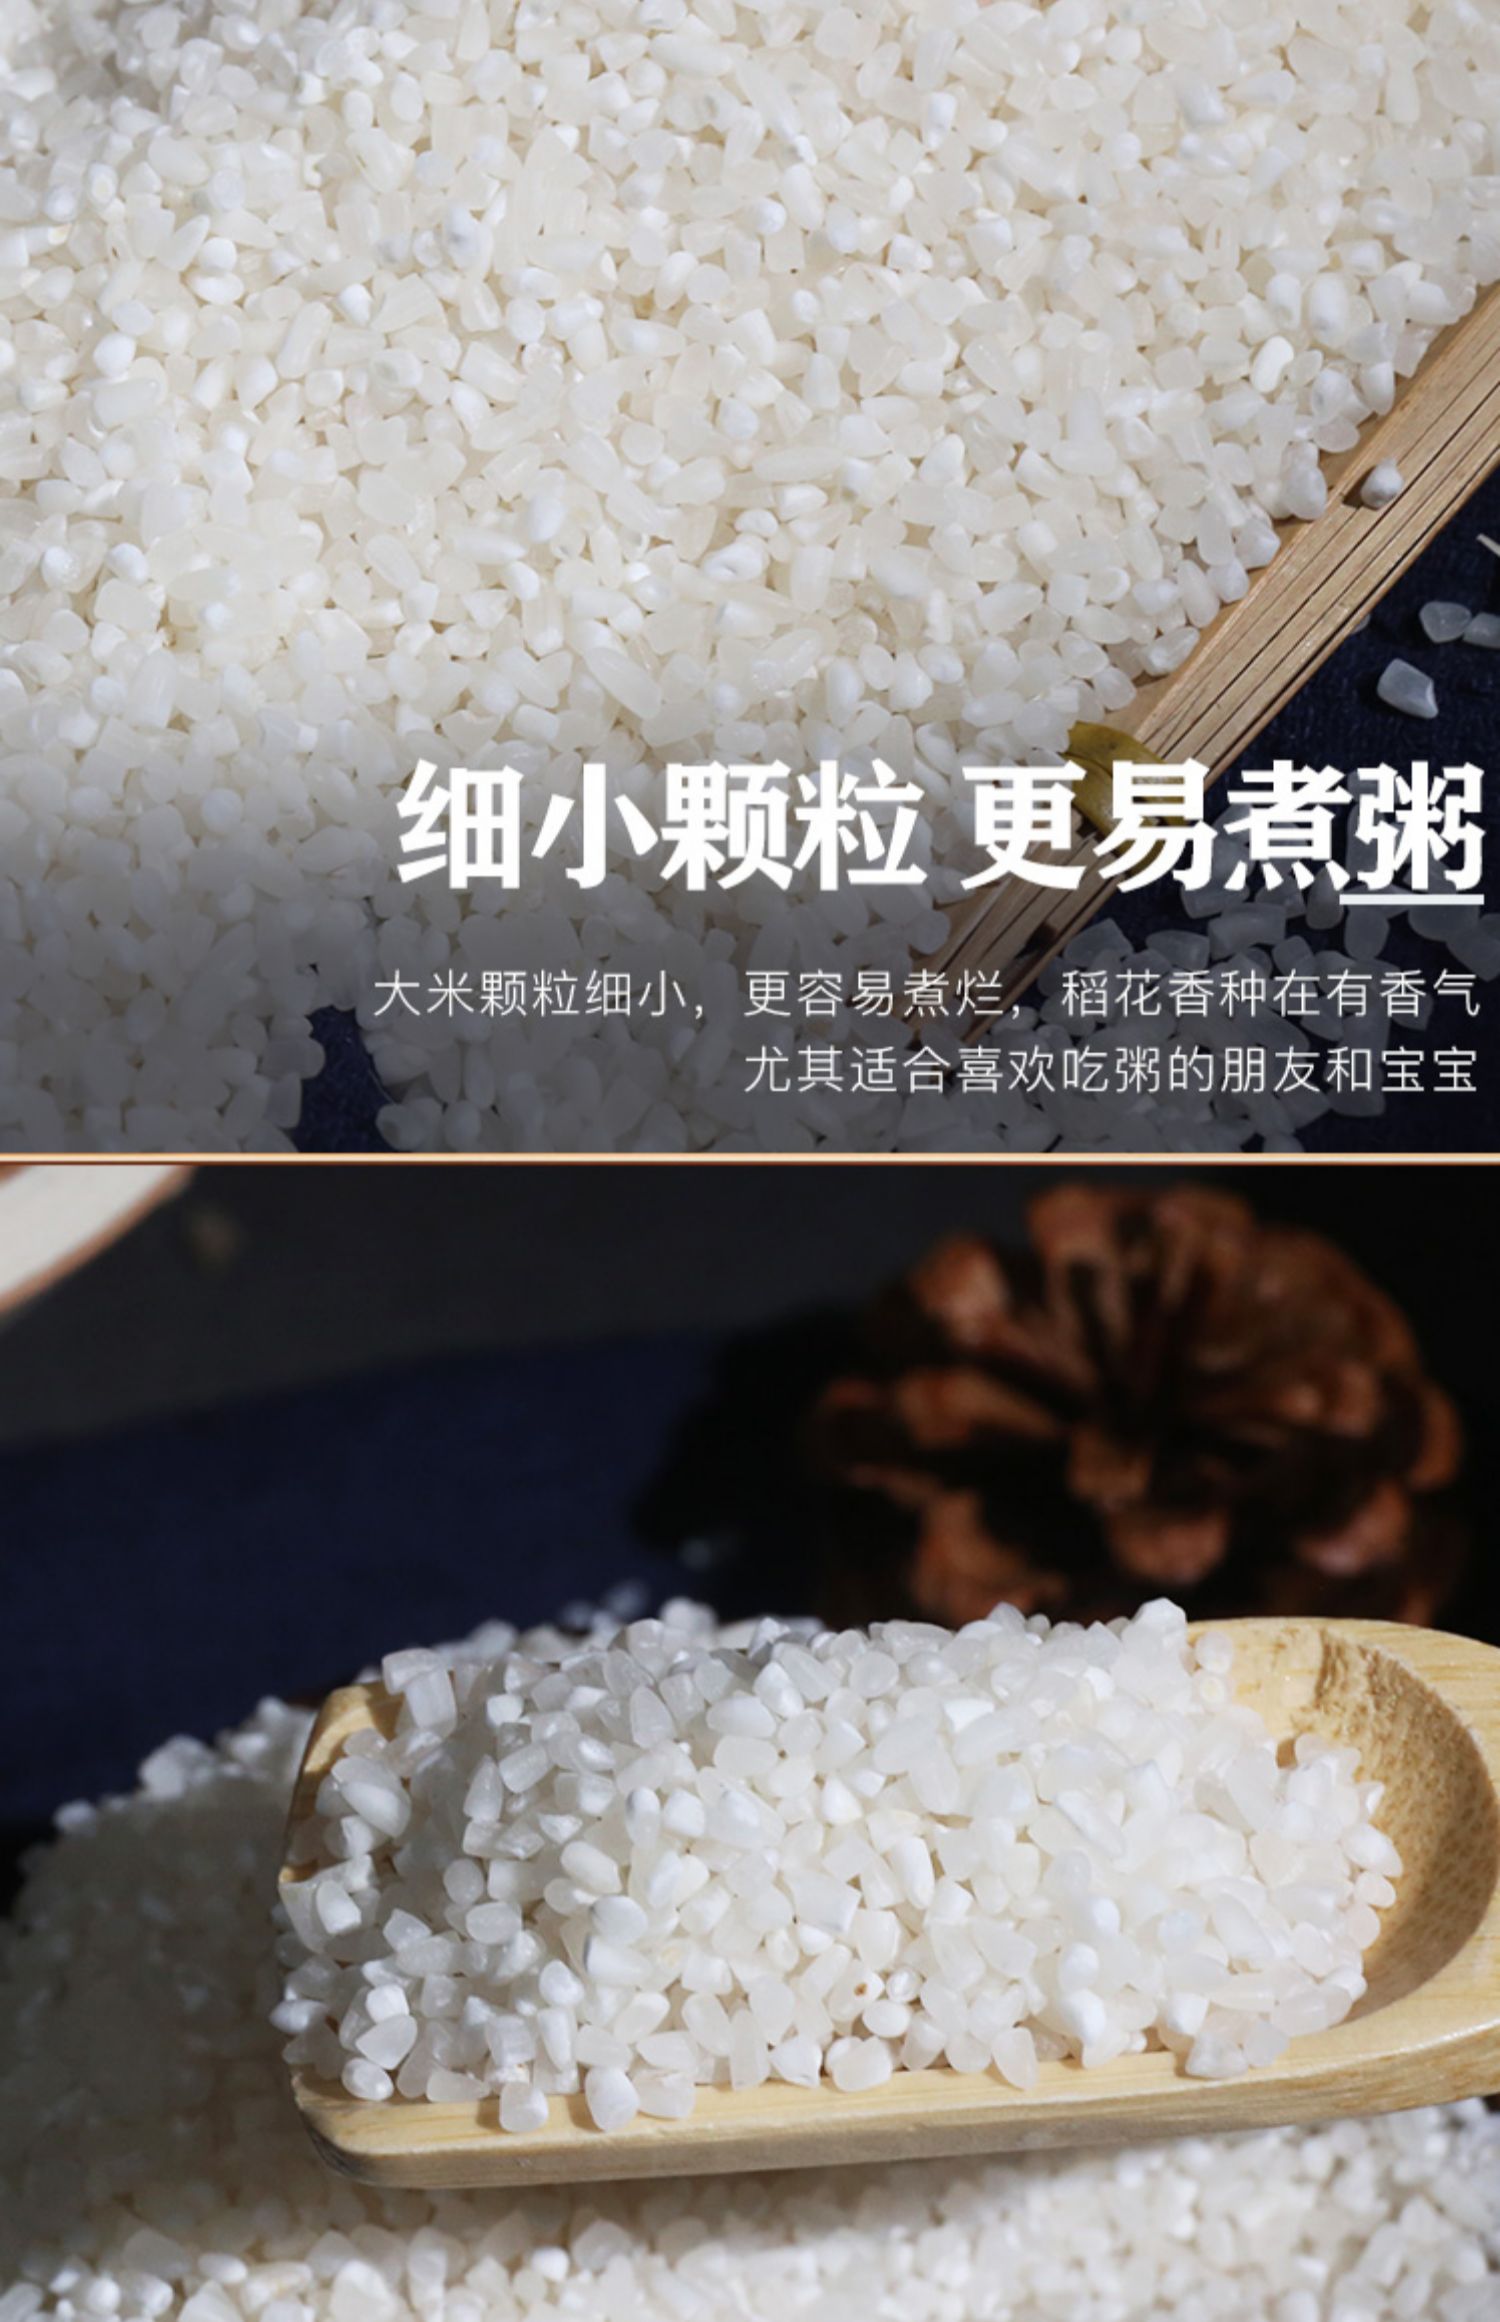 东北五常大米稻花香新米5斤煮粥专用米